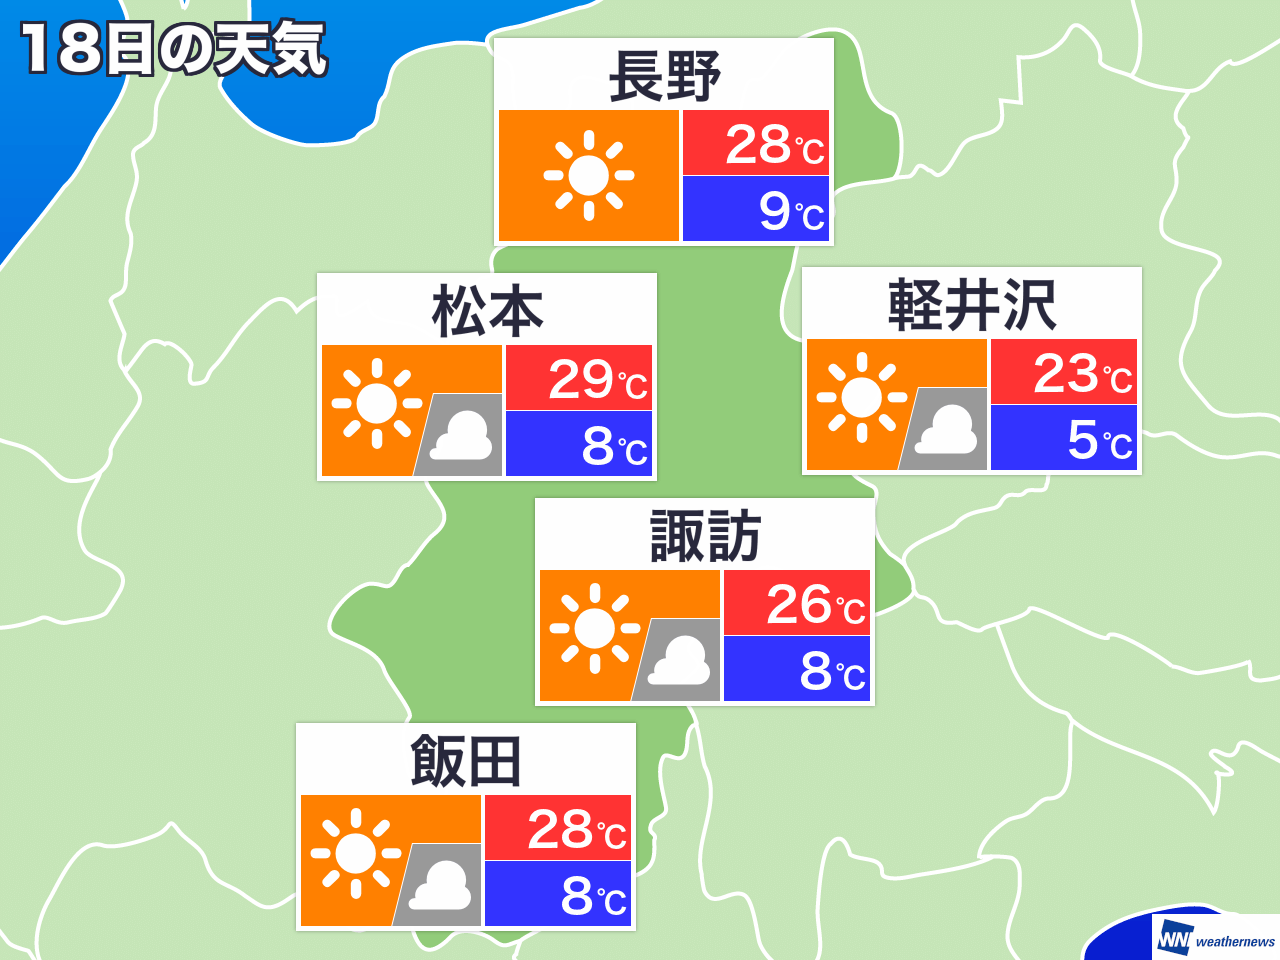 2月11日 火 長野県の今日の天気 ウェザーニュース